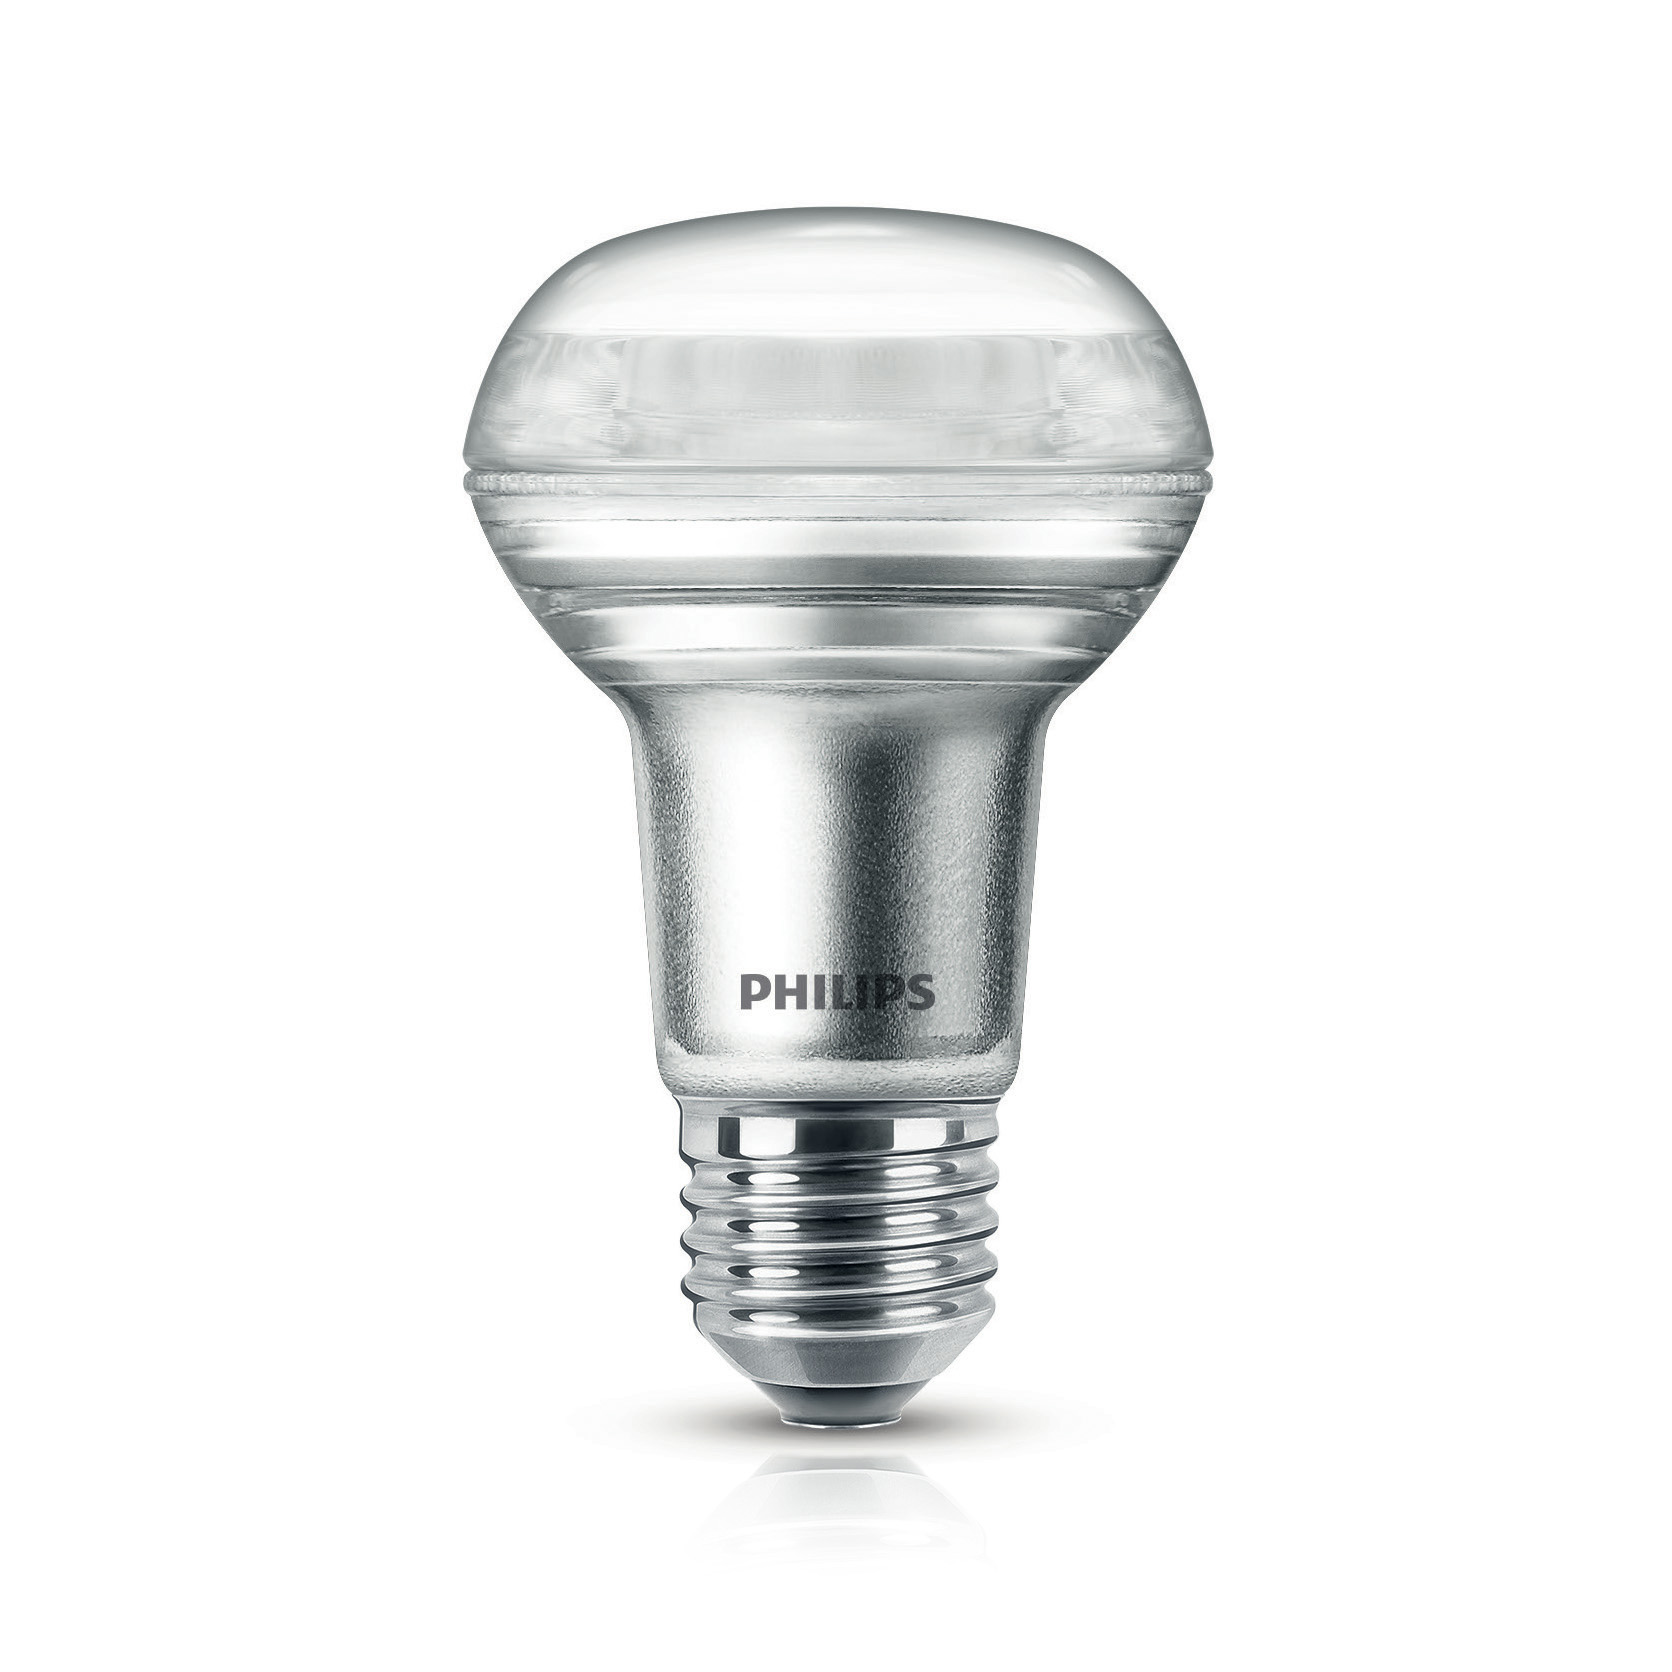 Philips CorePro LEDspot 3-40W E27 827 R63 36° 255lm 2700K CRI80